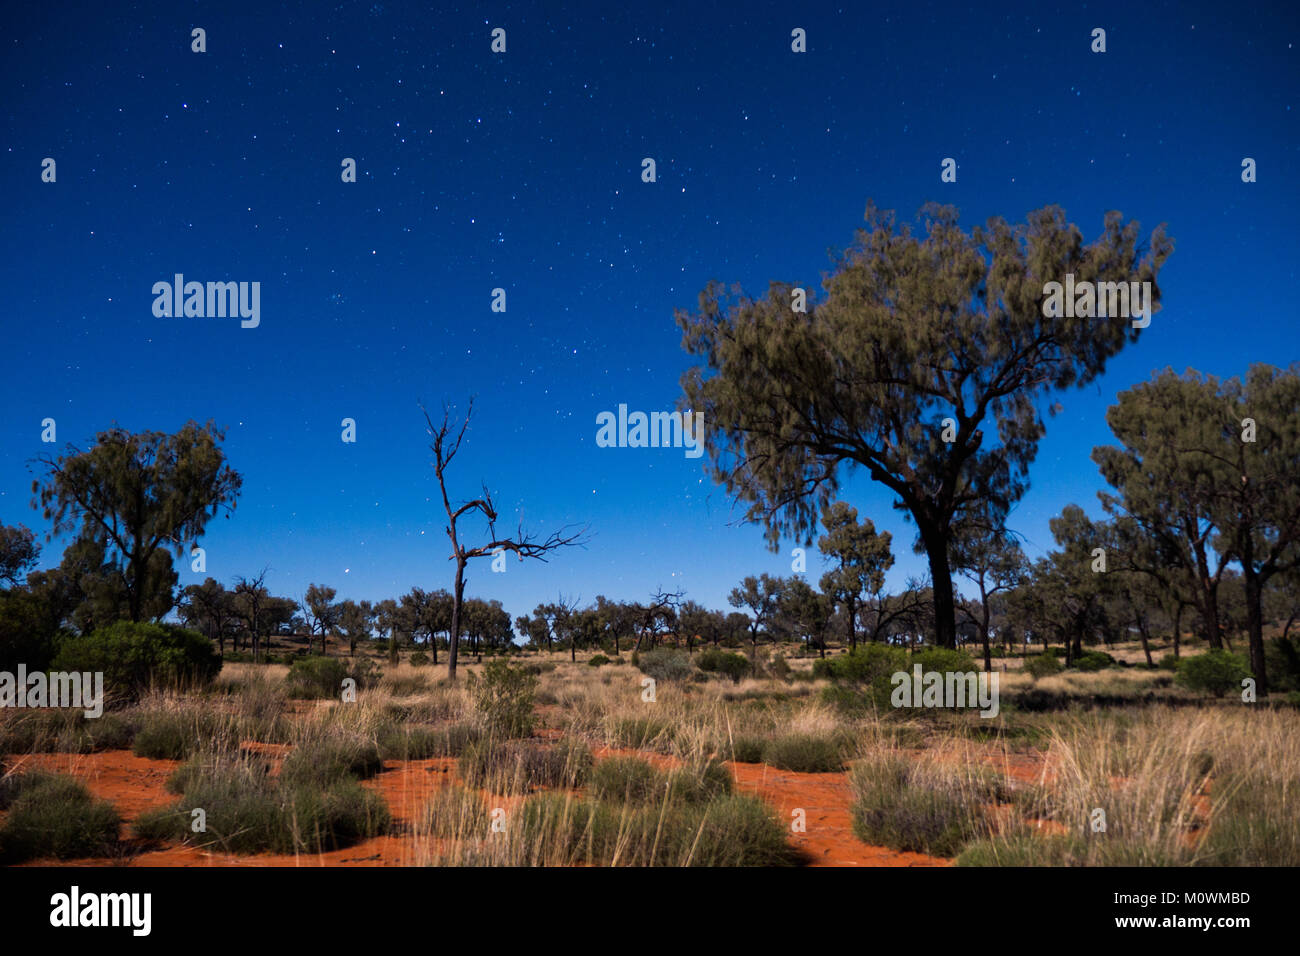 Northern Territory desert night sky Stock Photo